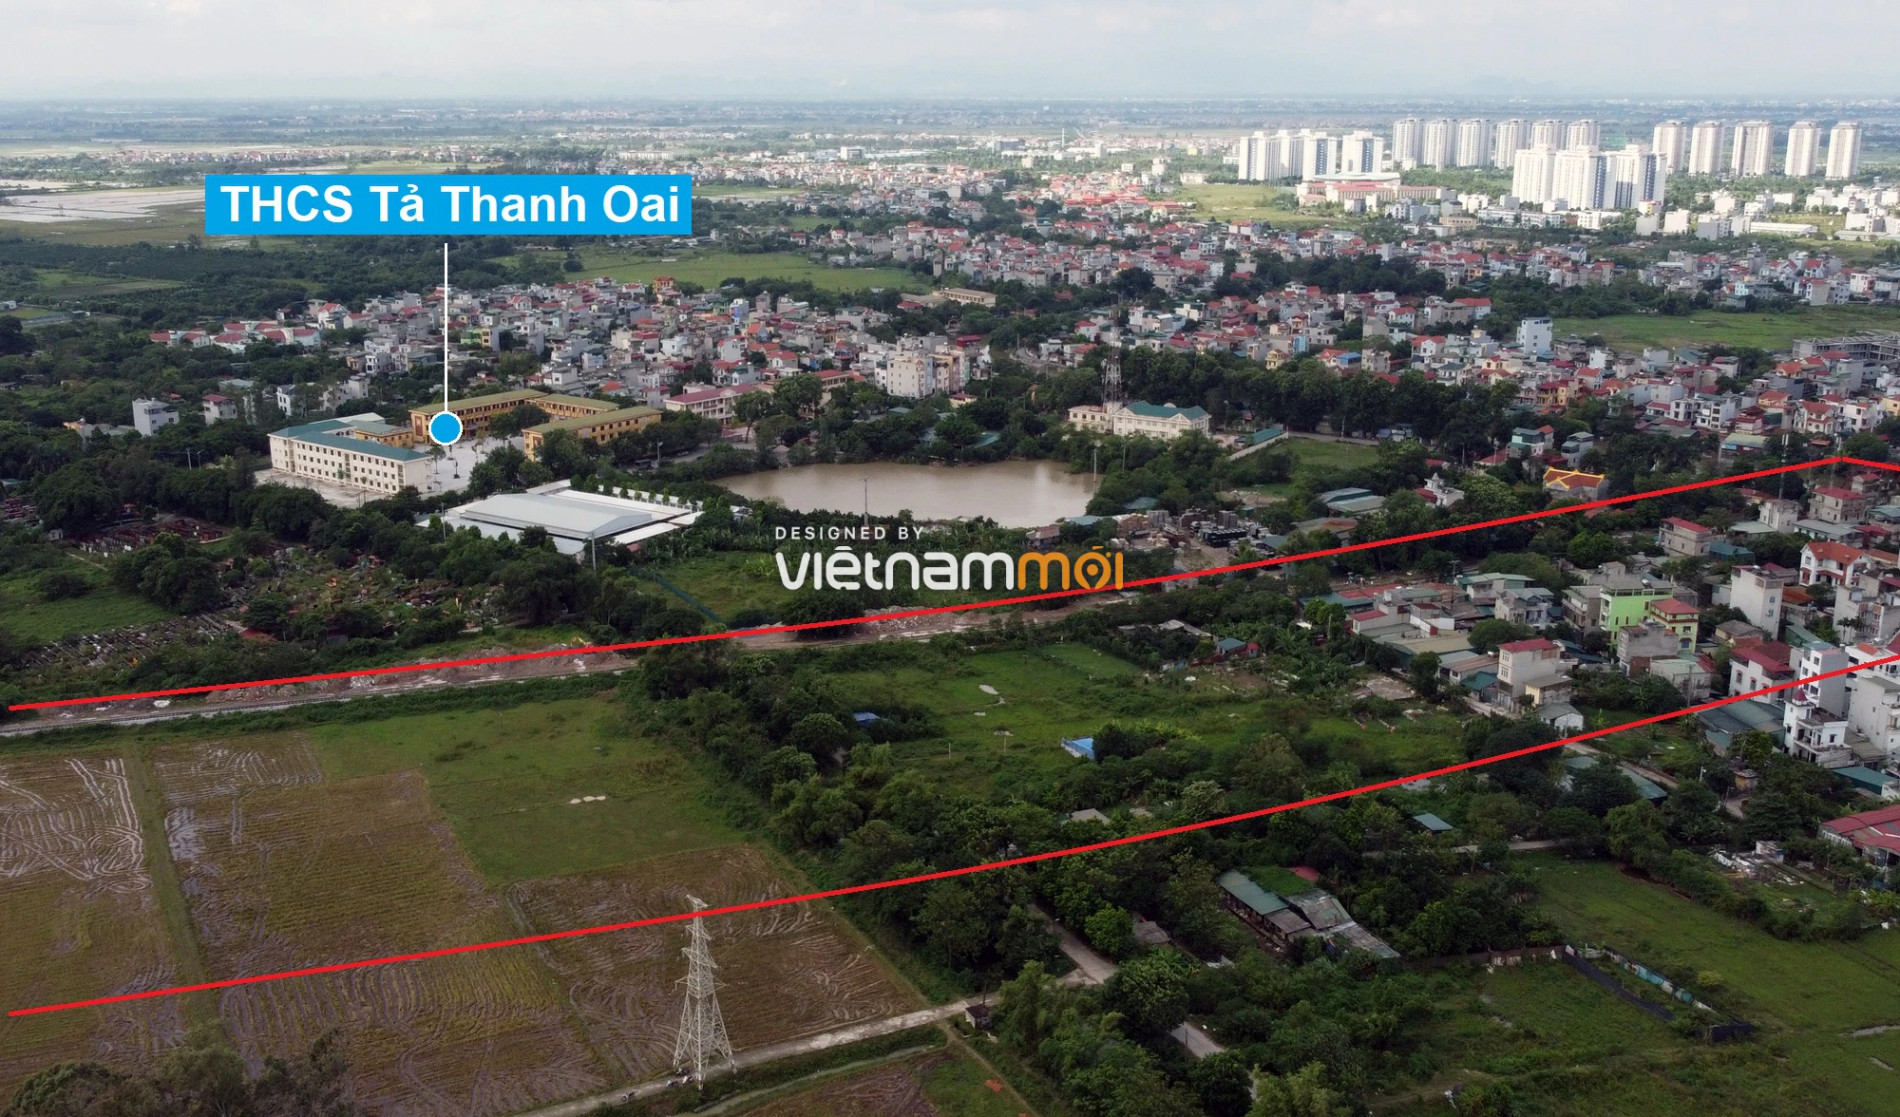 Những khu đất sắp thu hồi để mở đường ở xã Tả Thanh Oai, Thanh Trì, Hà Nội (phần 4) - Ảnh 5.